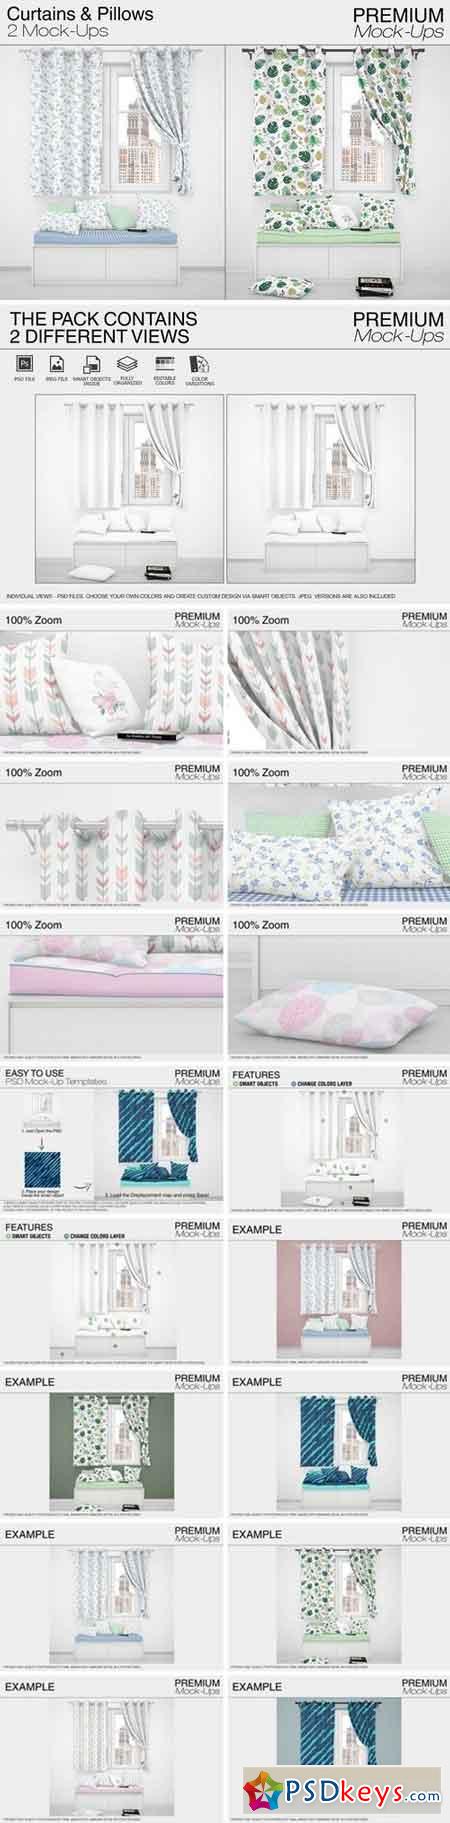 Pillows & Curtains 2024712